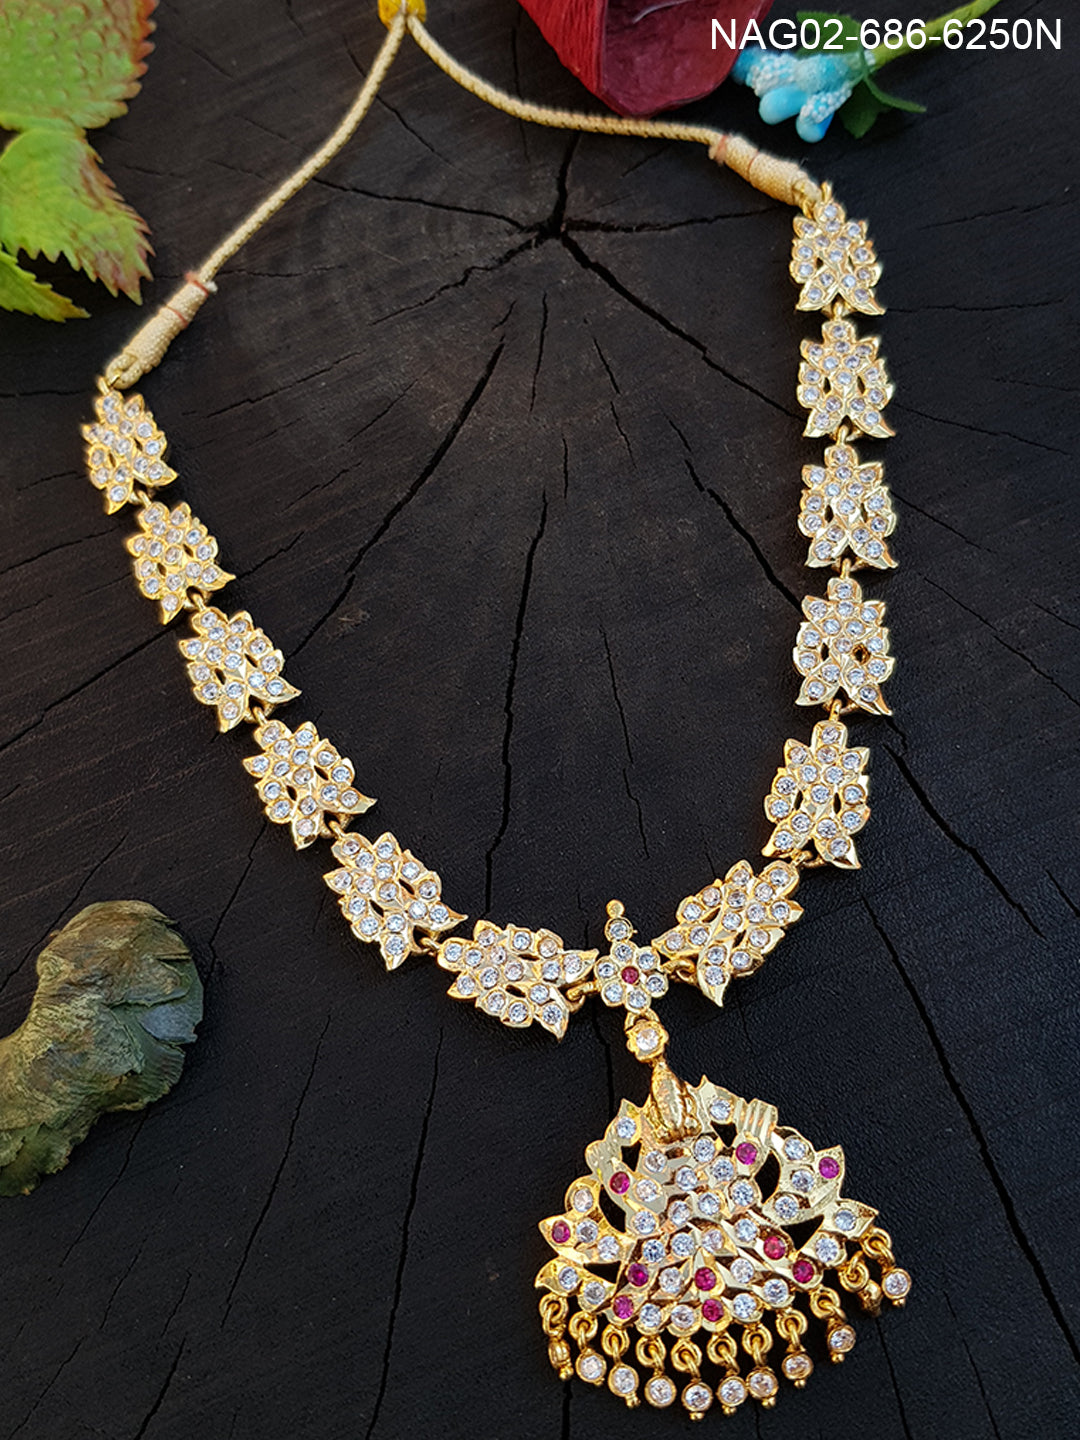 Gatti jewllery (impon jewelry) necklace set 6250N